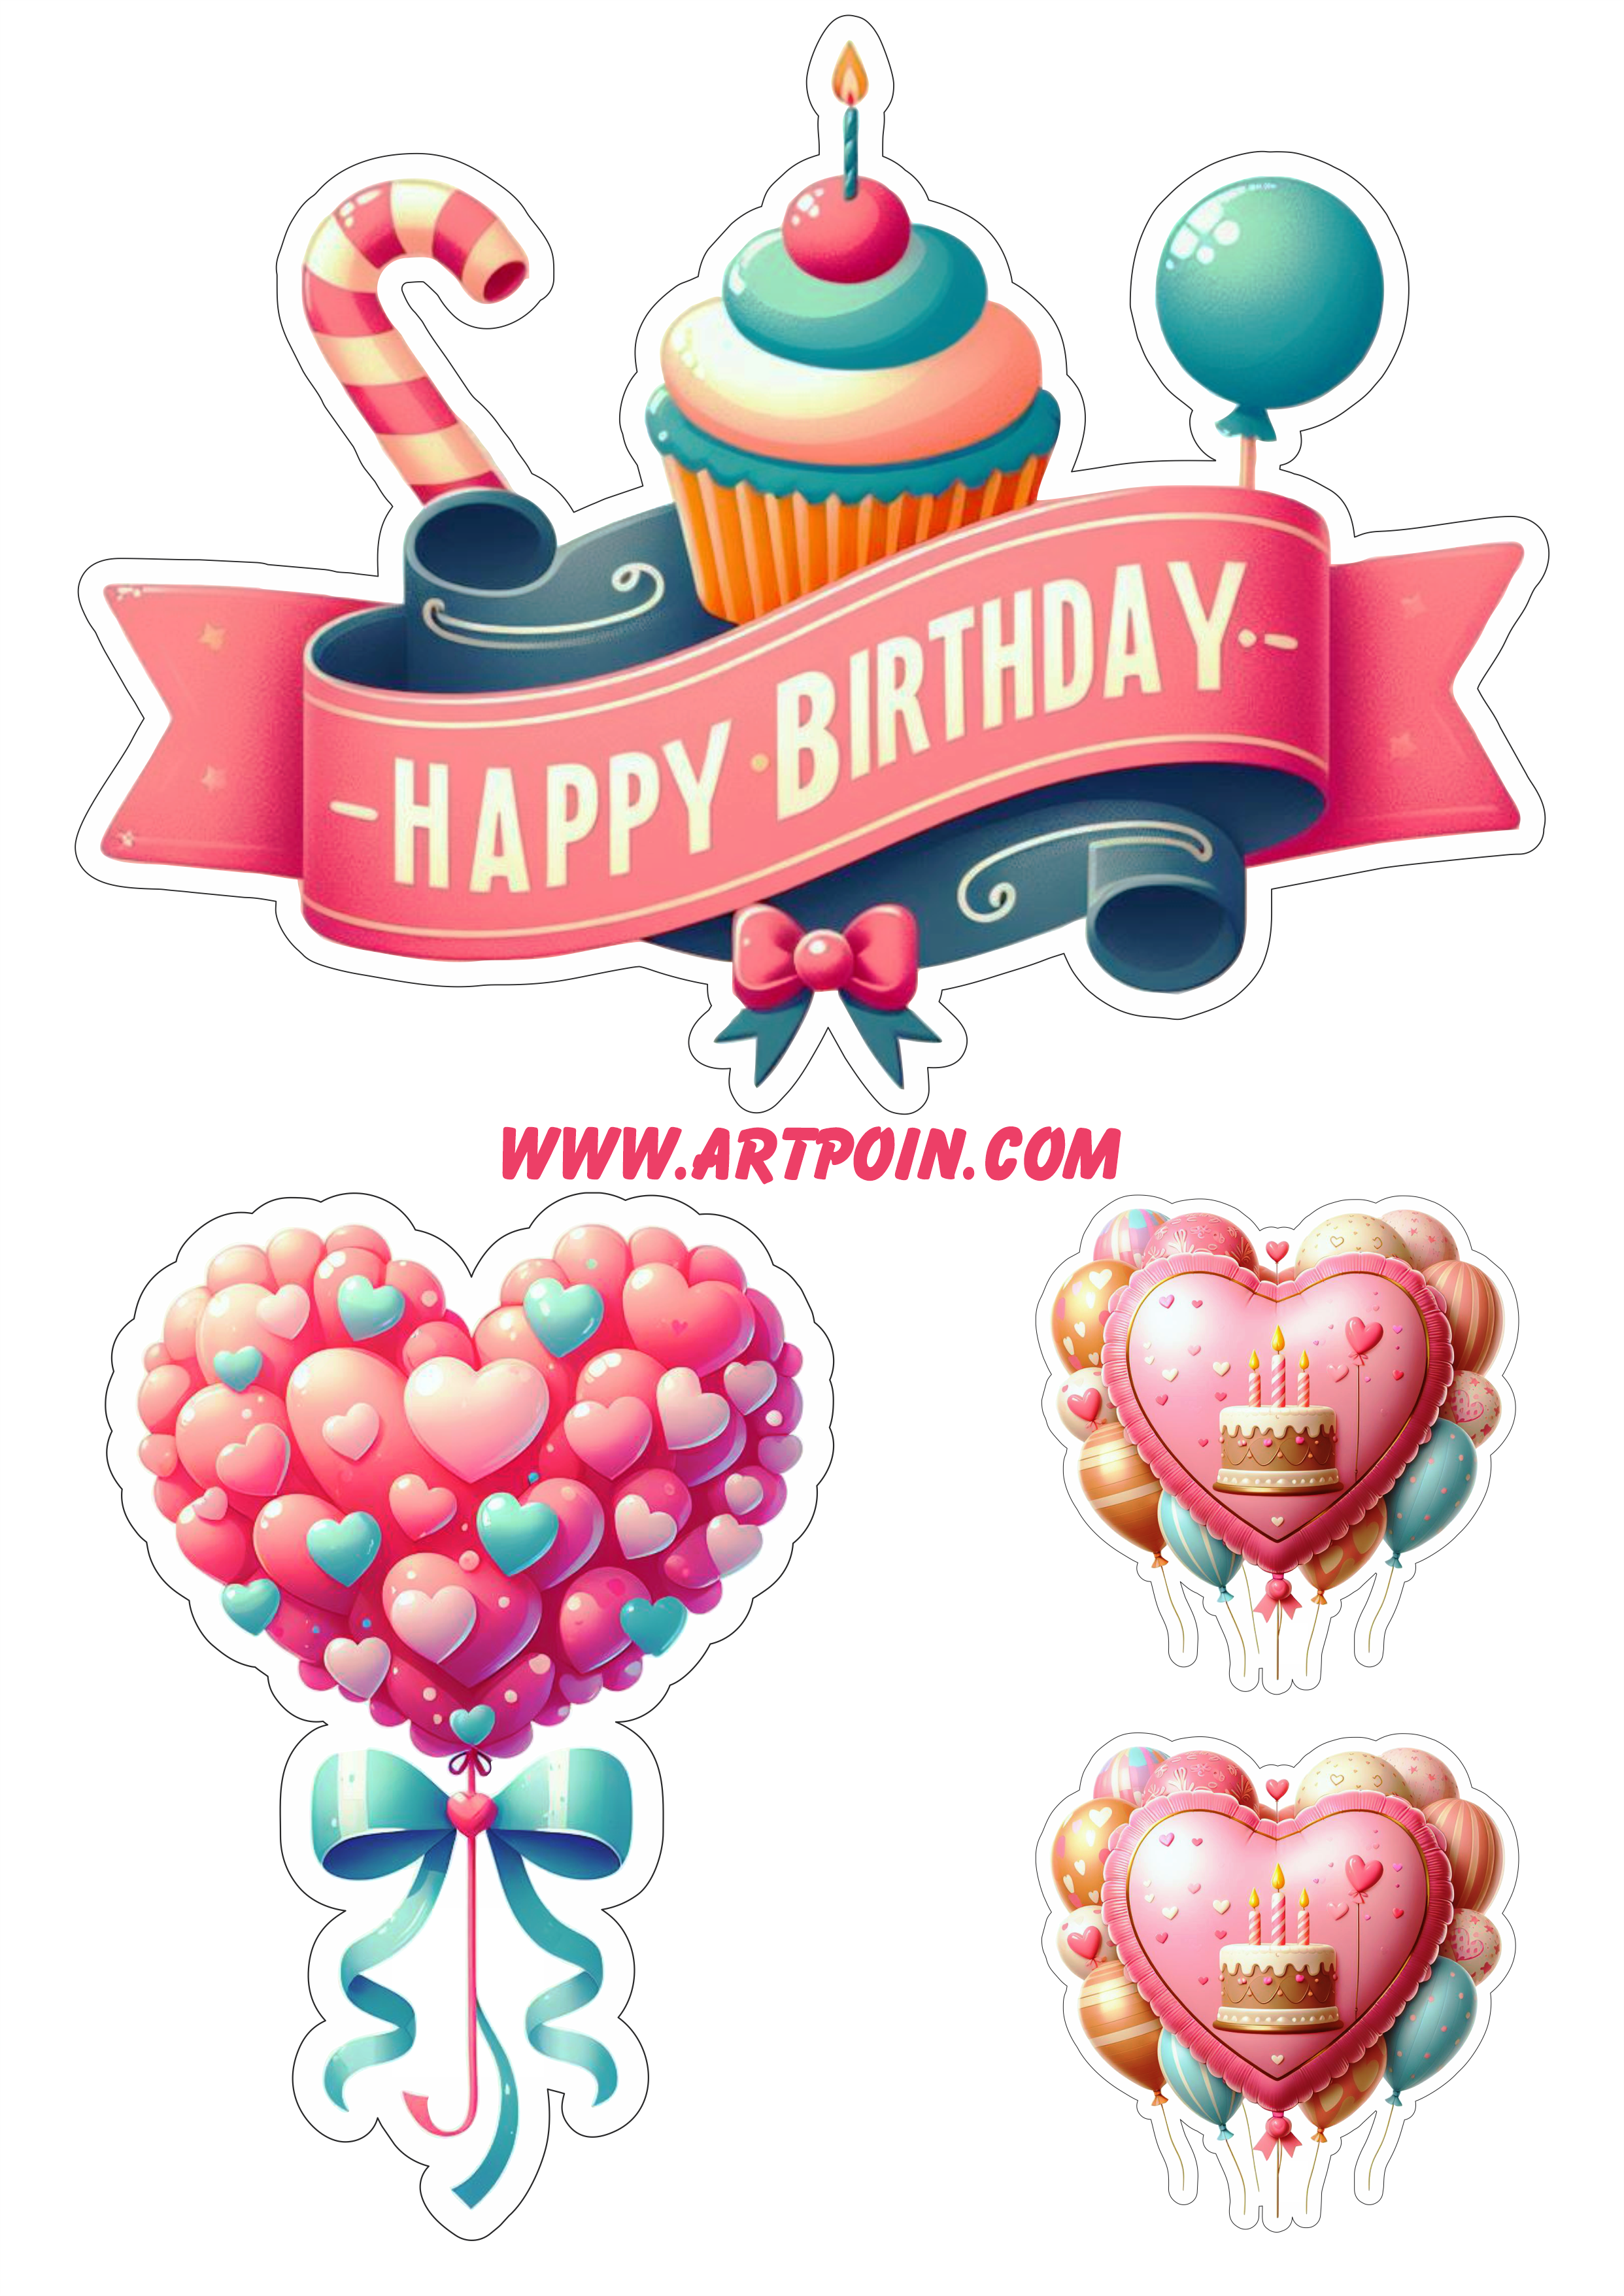 Happy birthday topo de bolo para festa de aniversário corações balões papelaria png